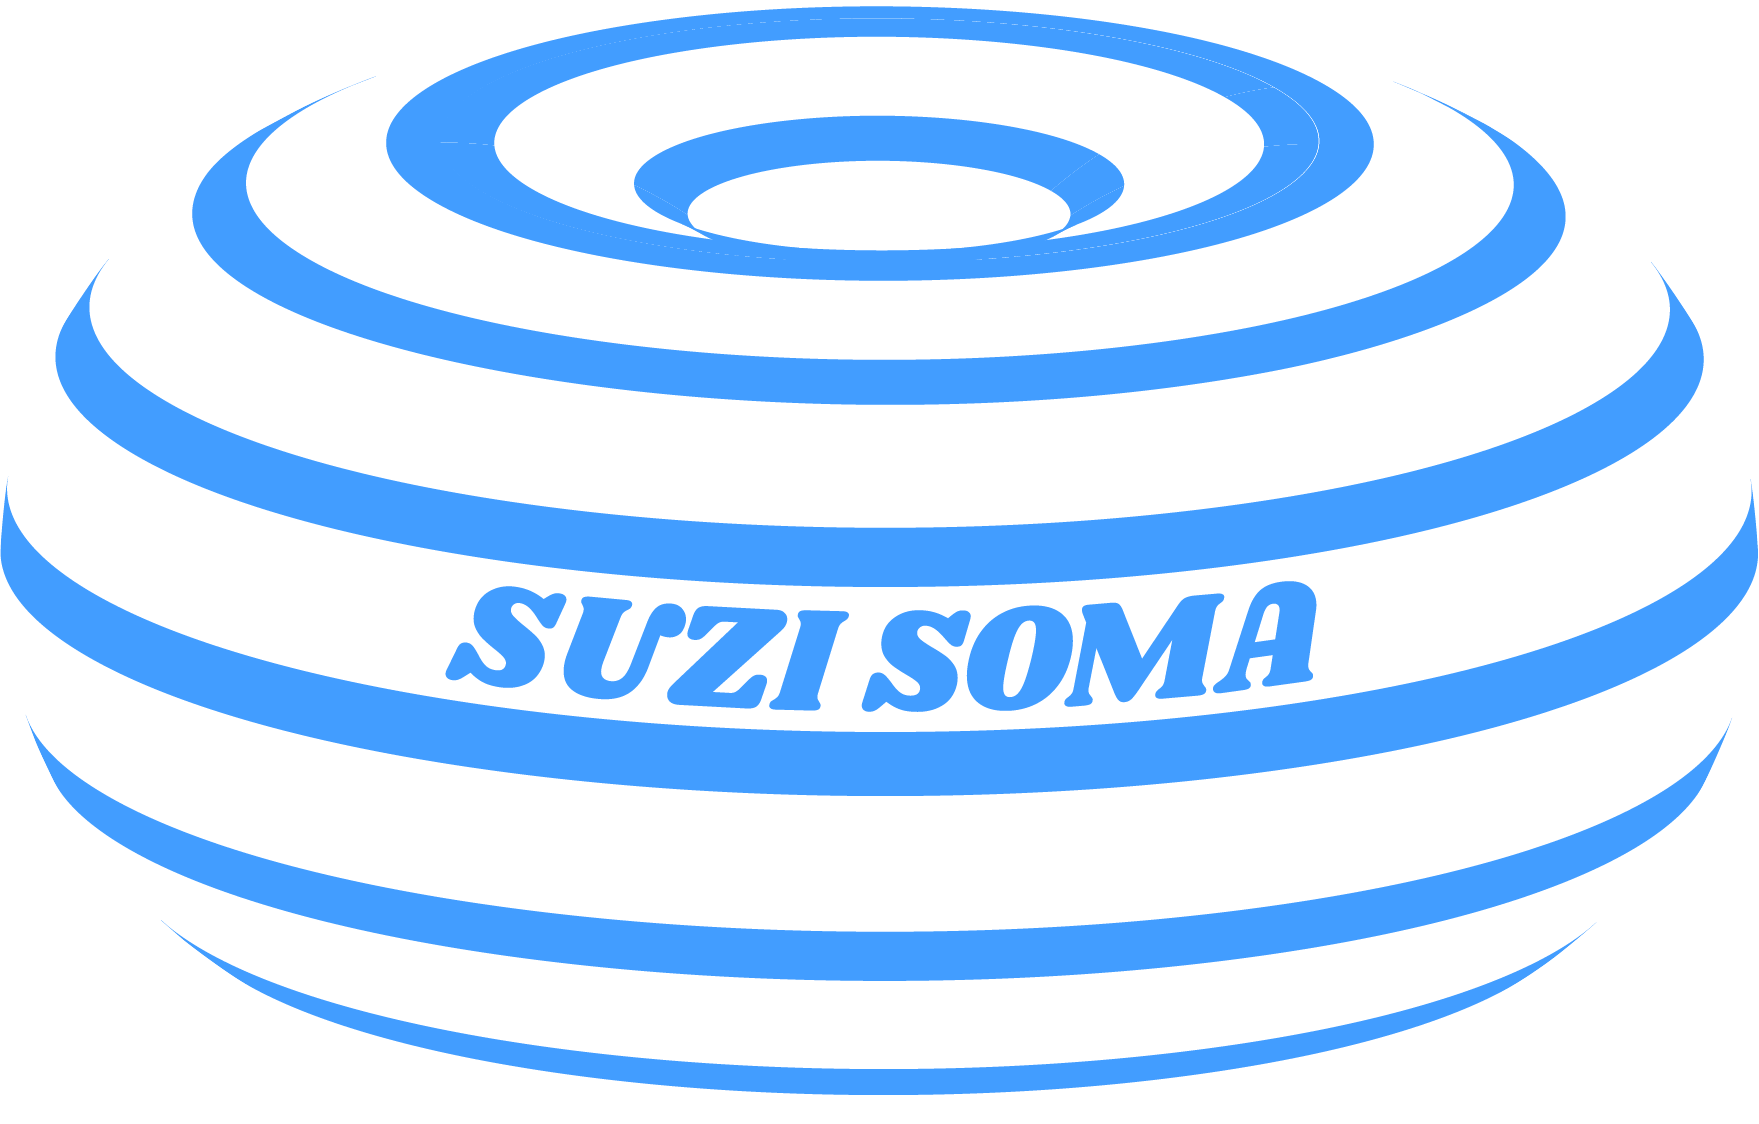 SUZI SOMA